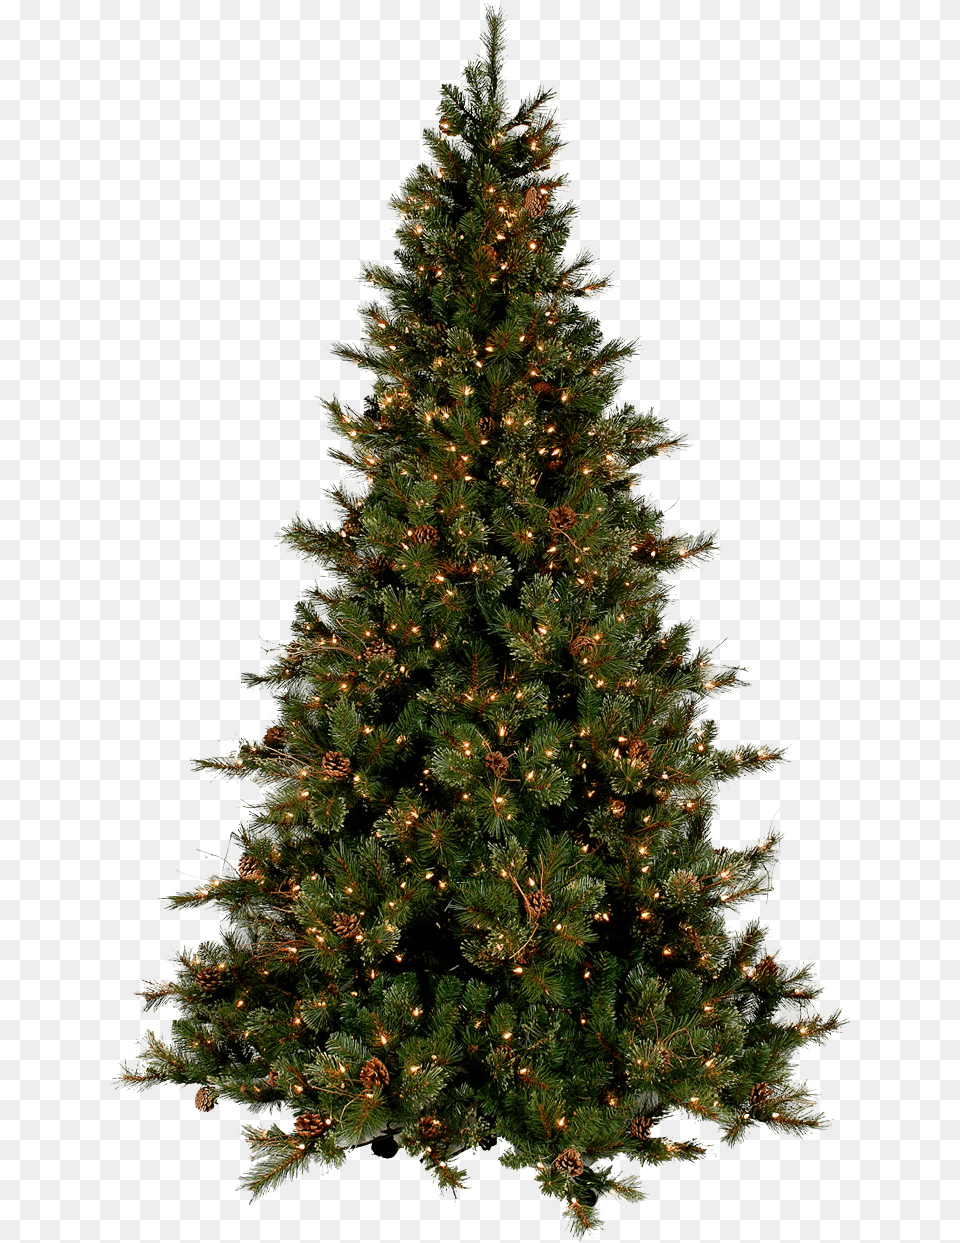 Christmas Real Christmas Tree, Plant, Pine, Christmas Decorations, Festival Png Image